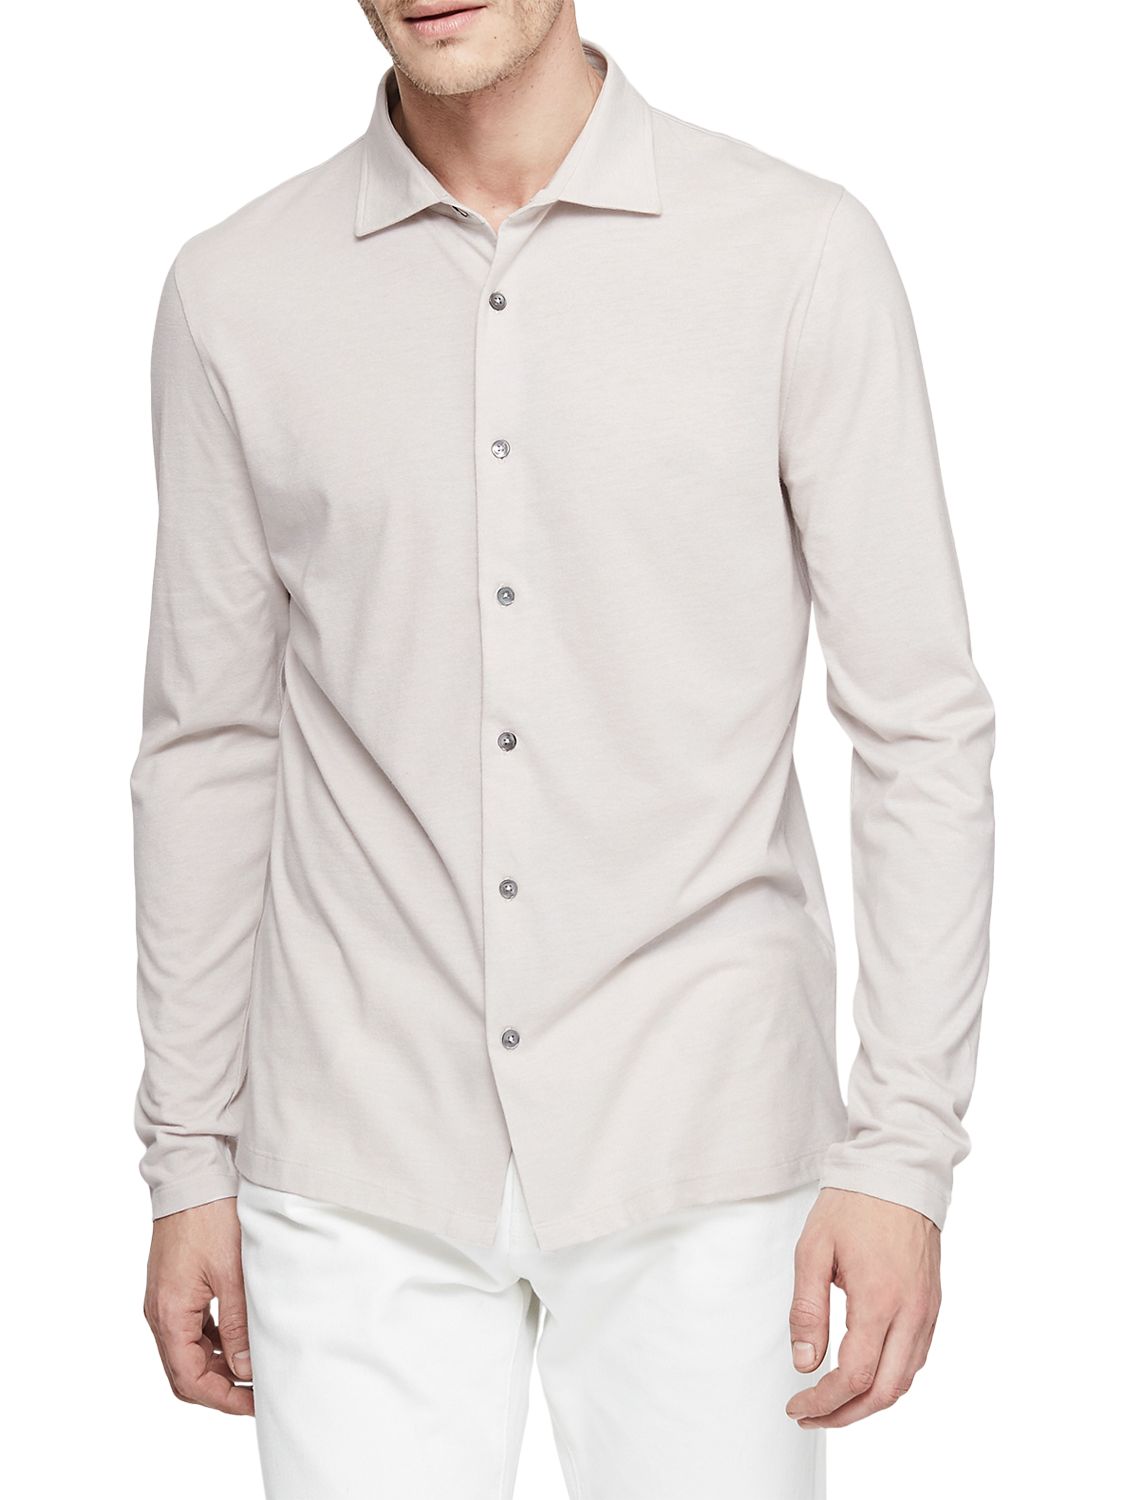 Reiss Oliver Jersey Shirt, Soft Grey, XL